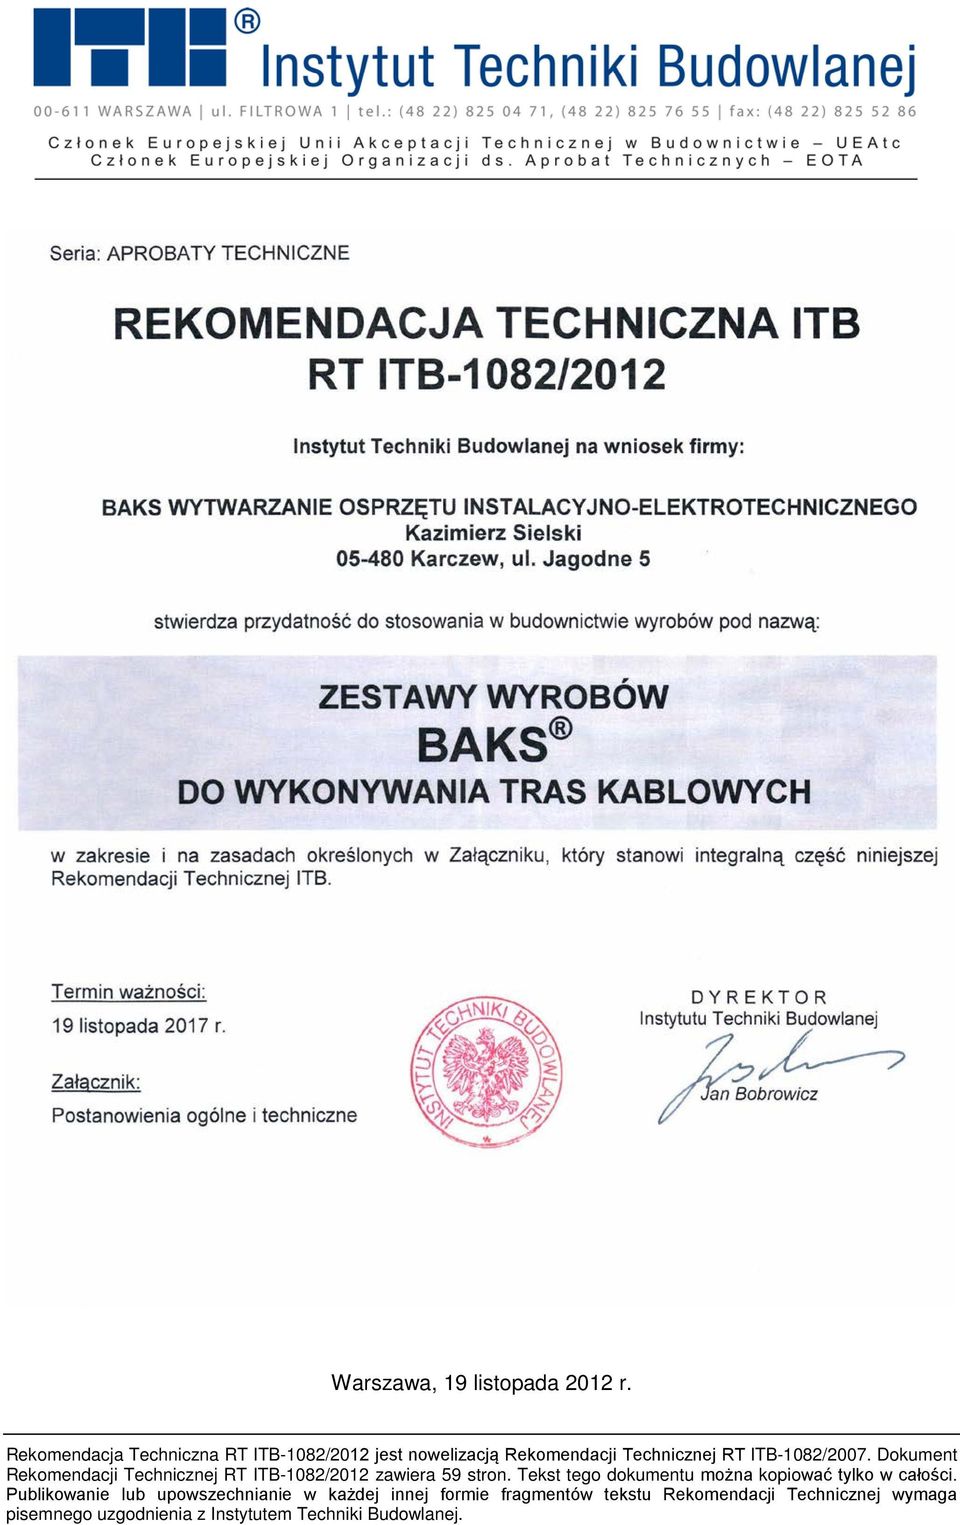 Dokument Rekomendacji Technicznej RT ITB-1082/2012 zawiera 59 stron.